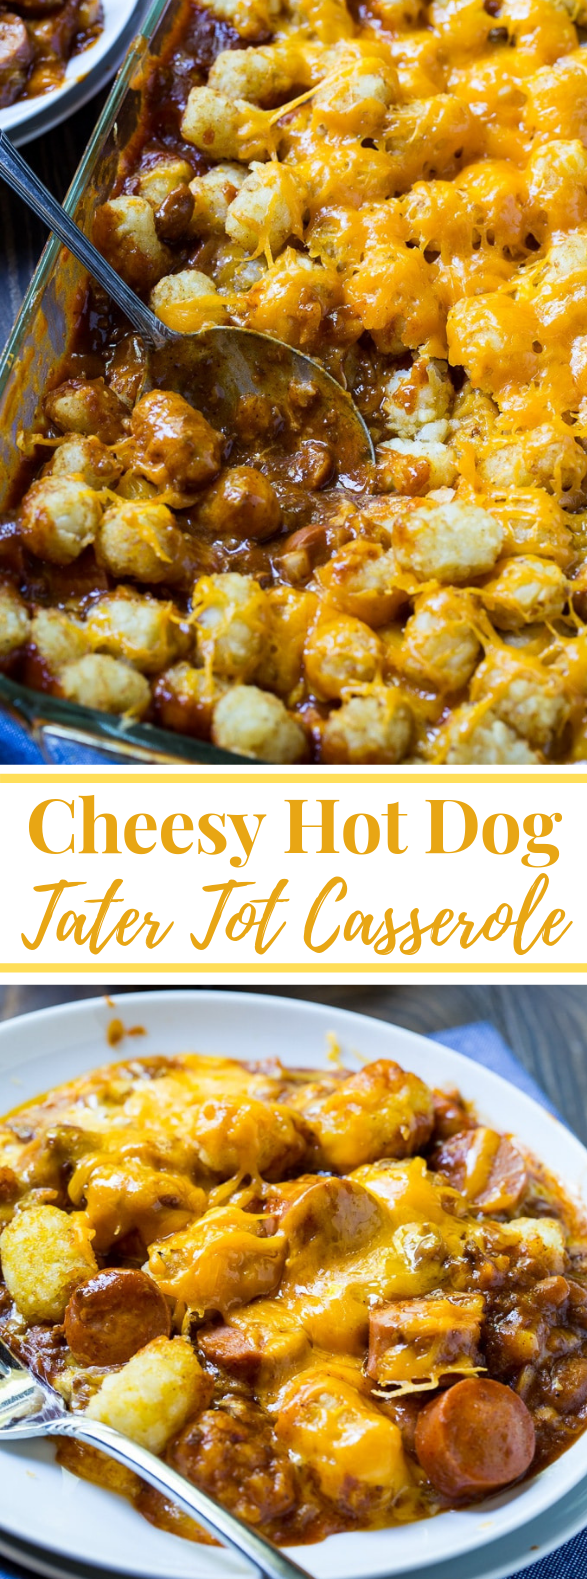 Cheesy Hot Dog Tater Tot Casserole #dinner #casserole